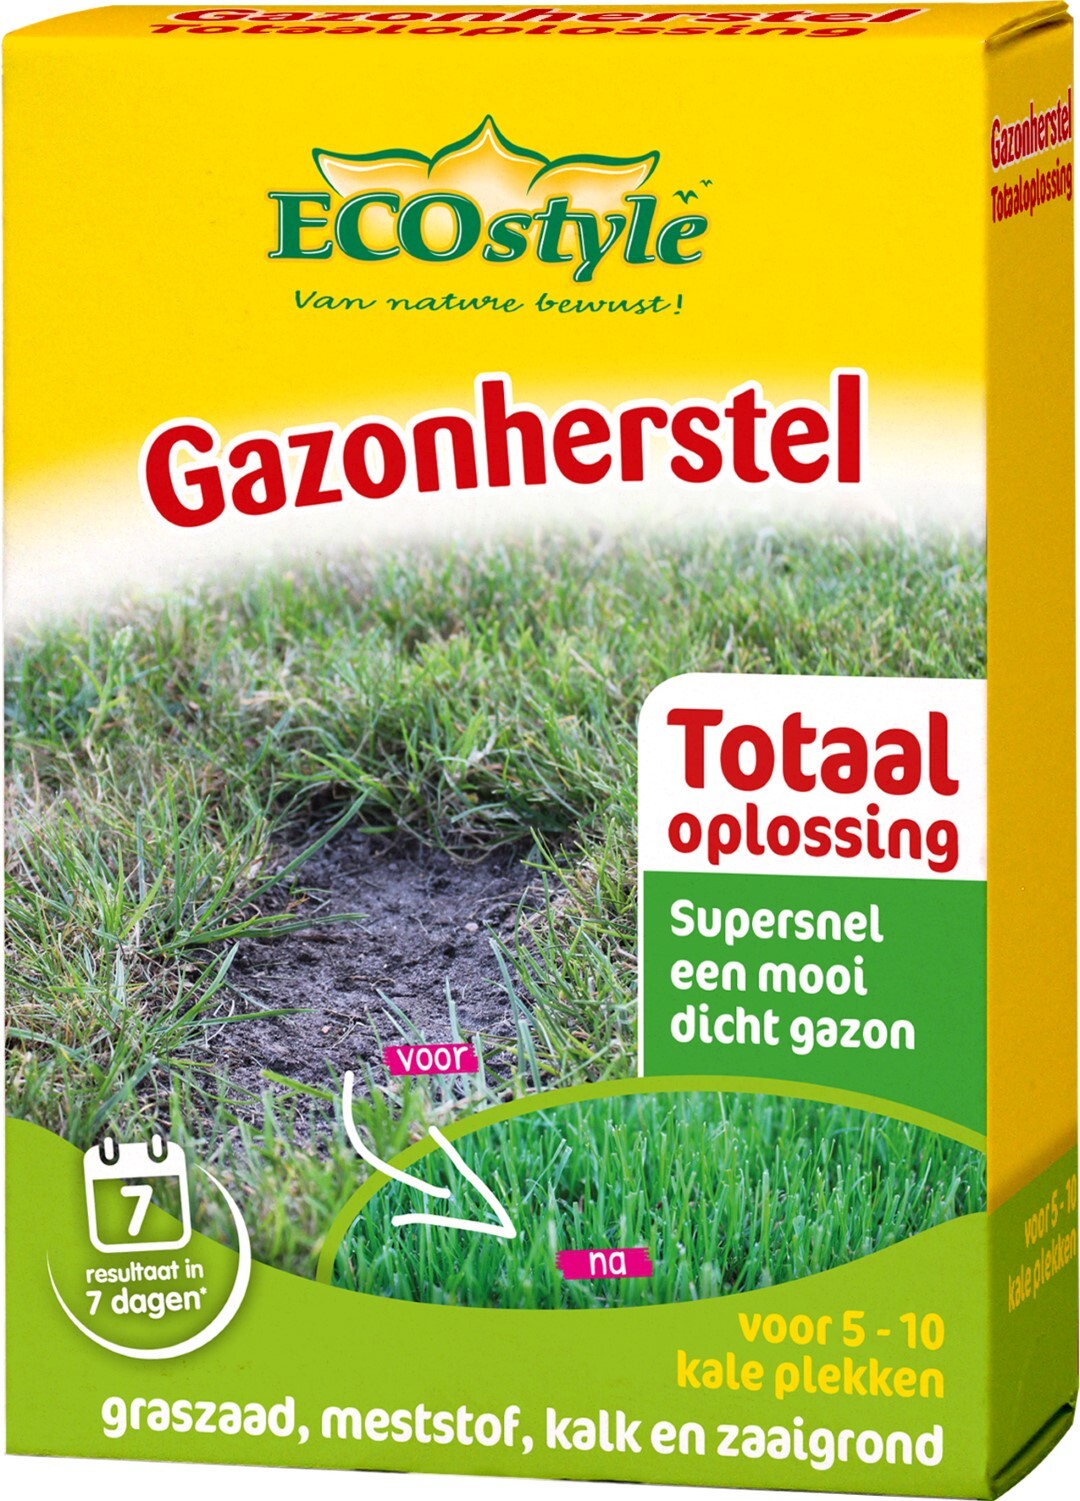 ECOSTYLE Gazonherstel 300 gram tegen kale plekken in het gazon